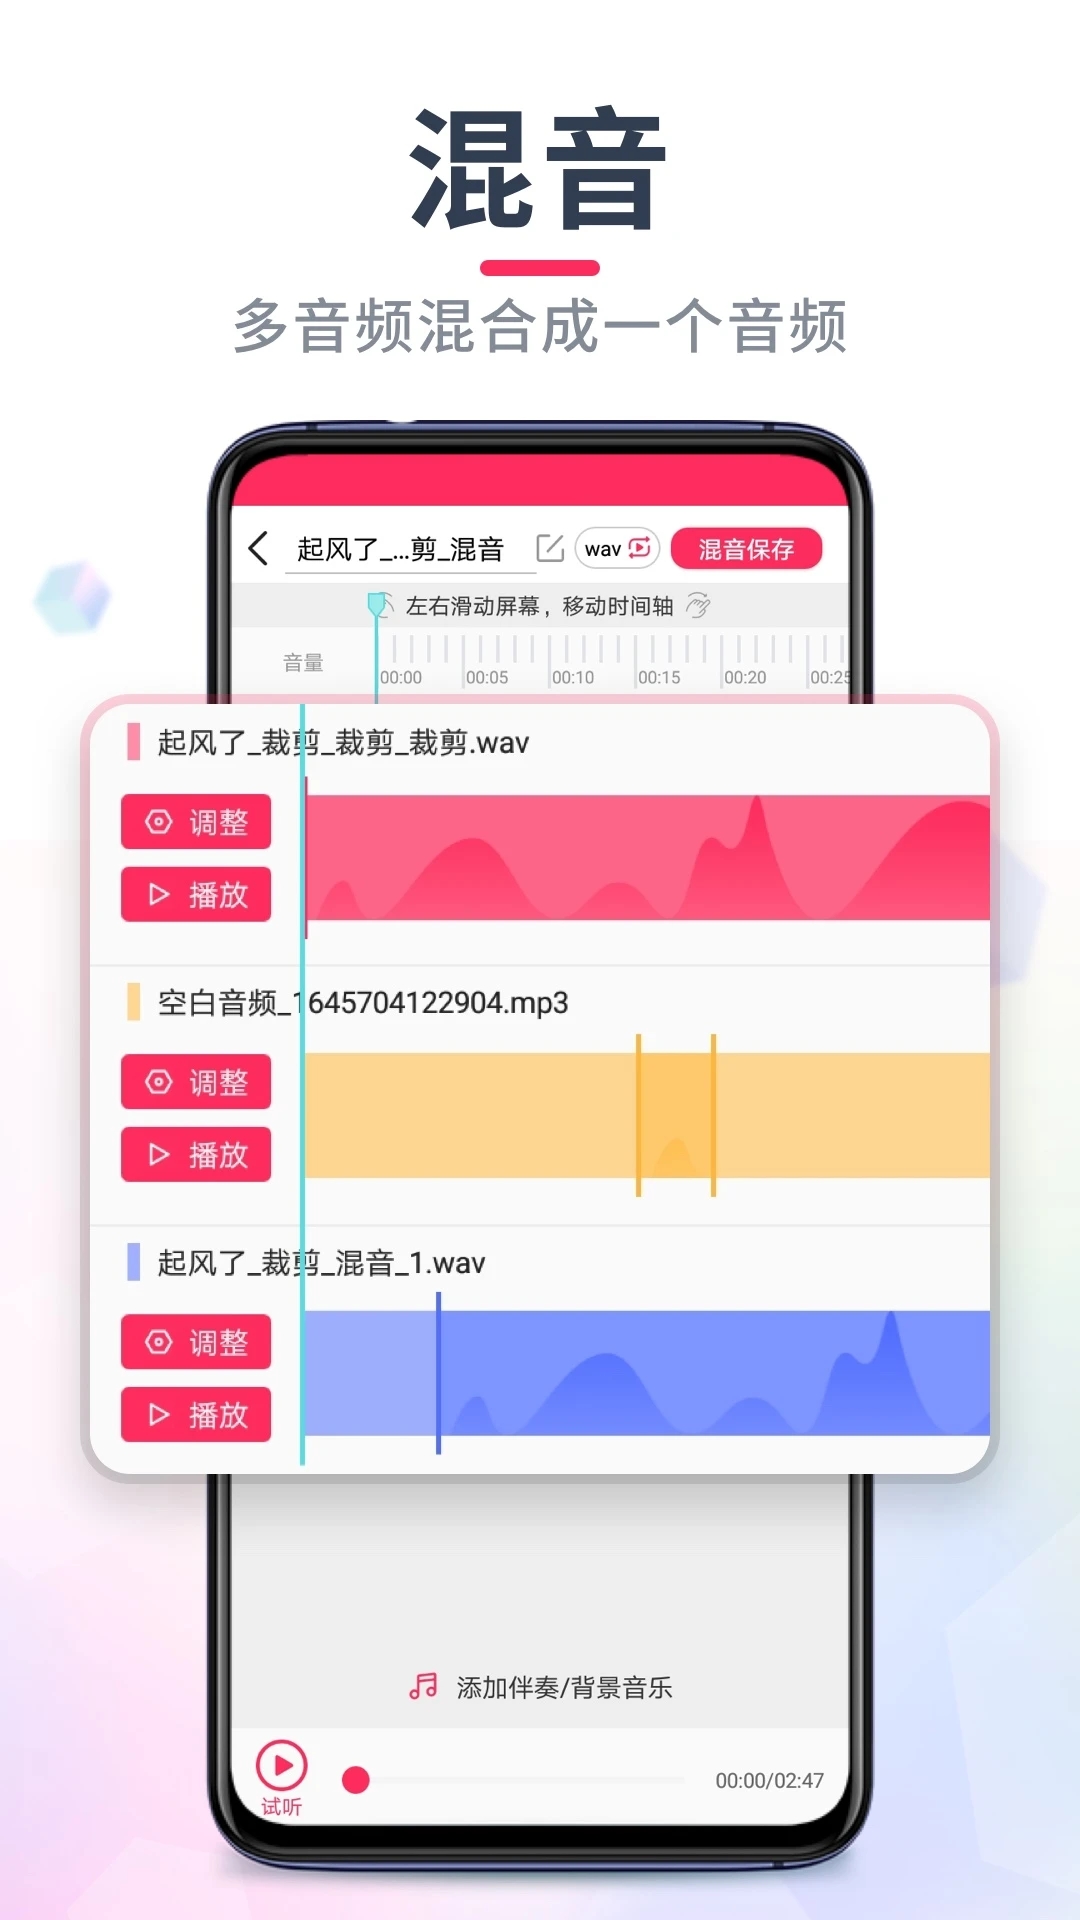 音频裁剪大师app下载软件22.1.94